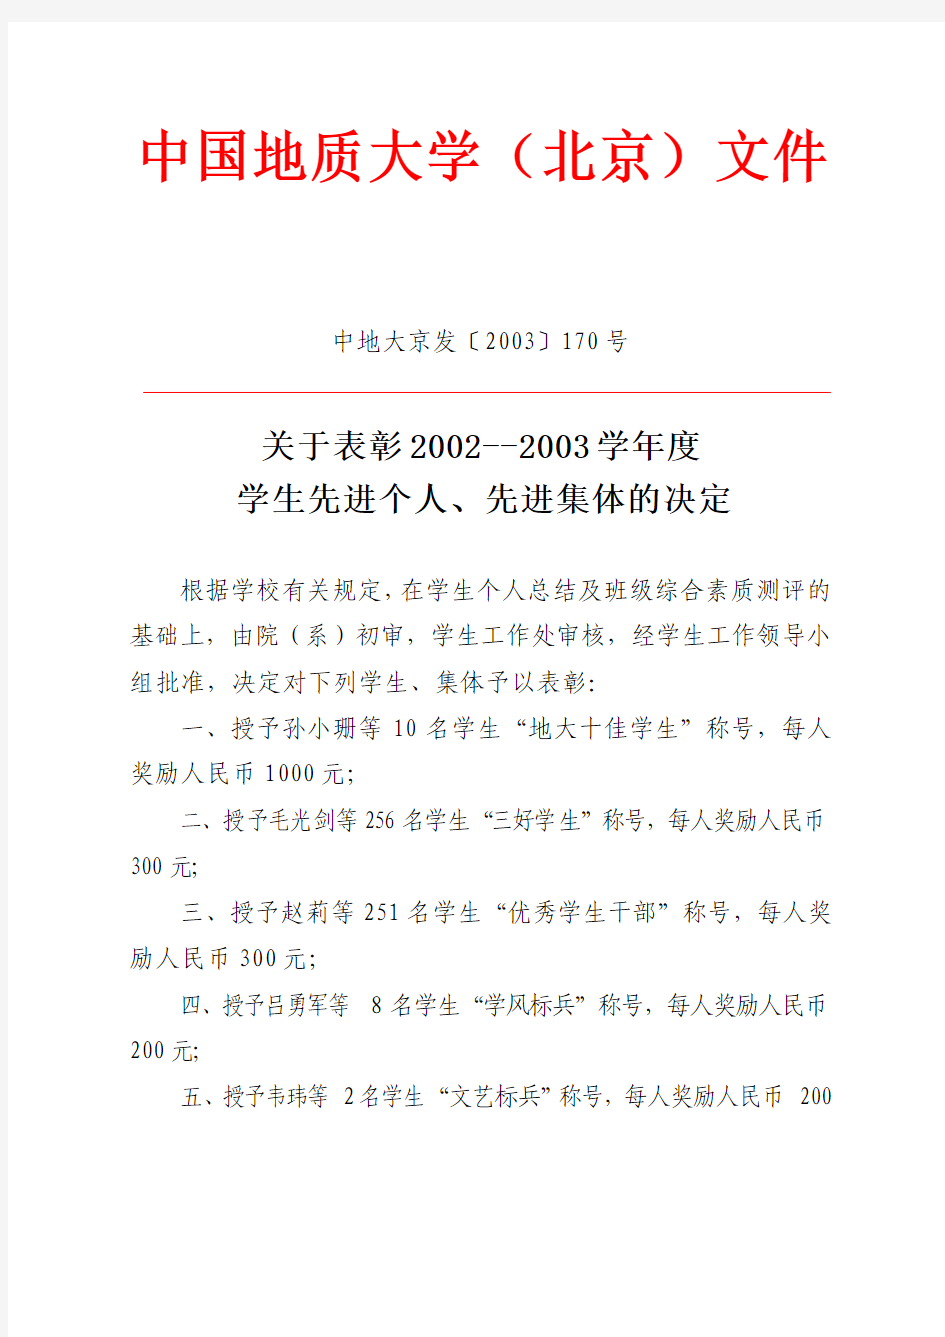 中国地质大学(北京)文件